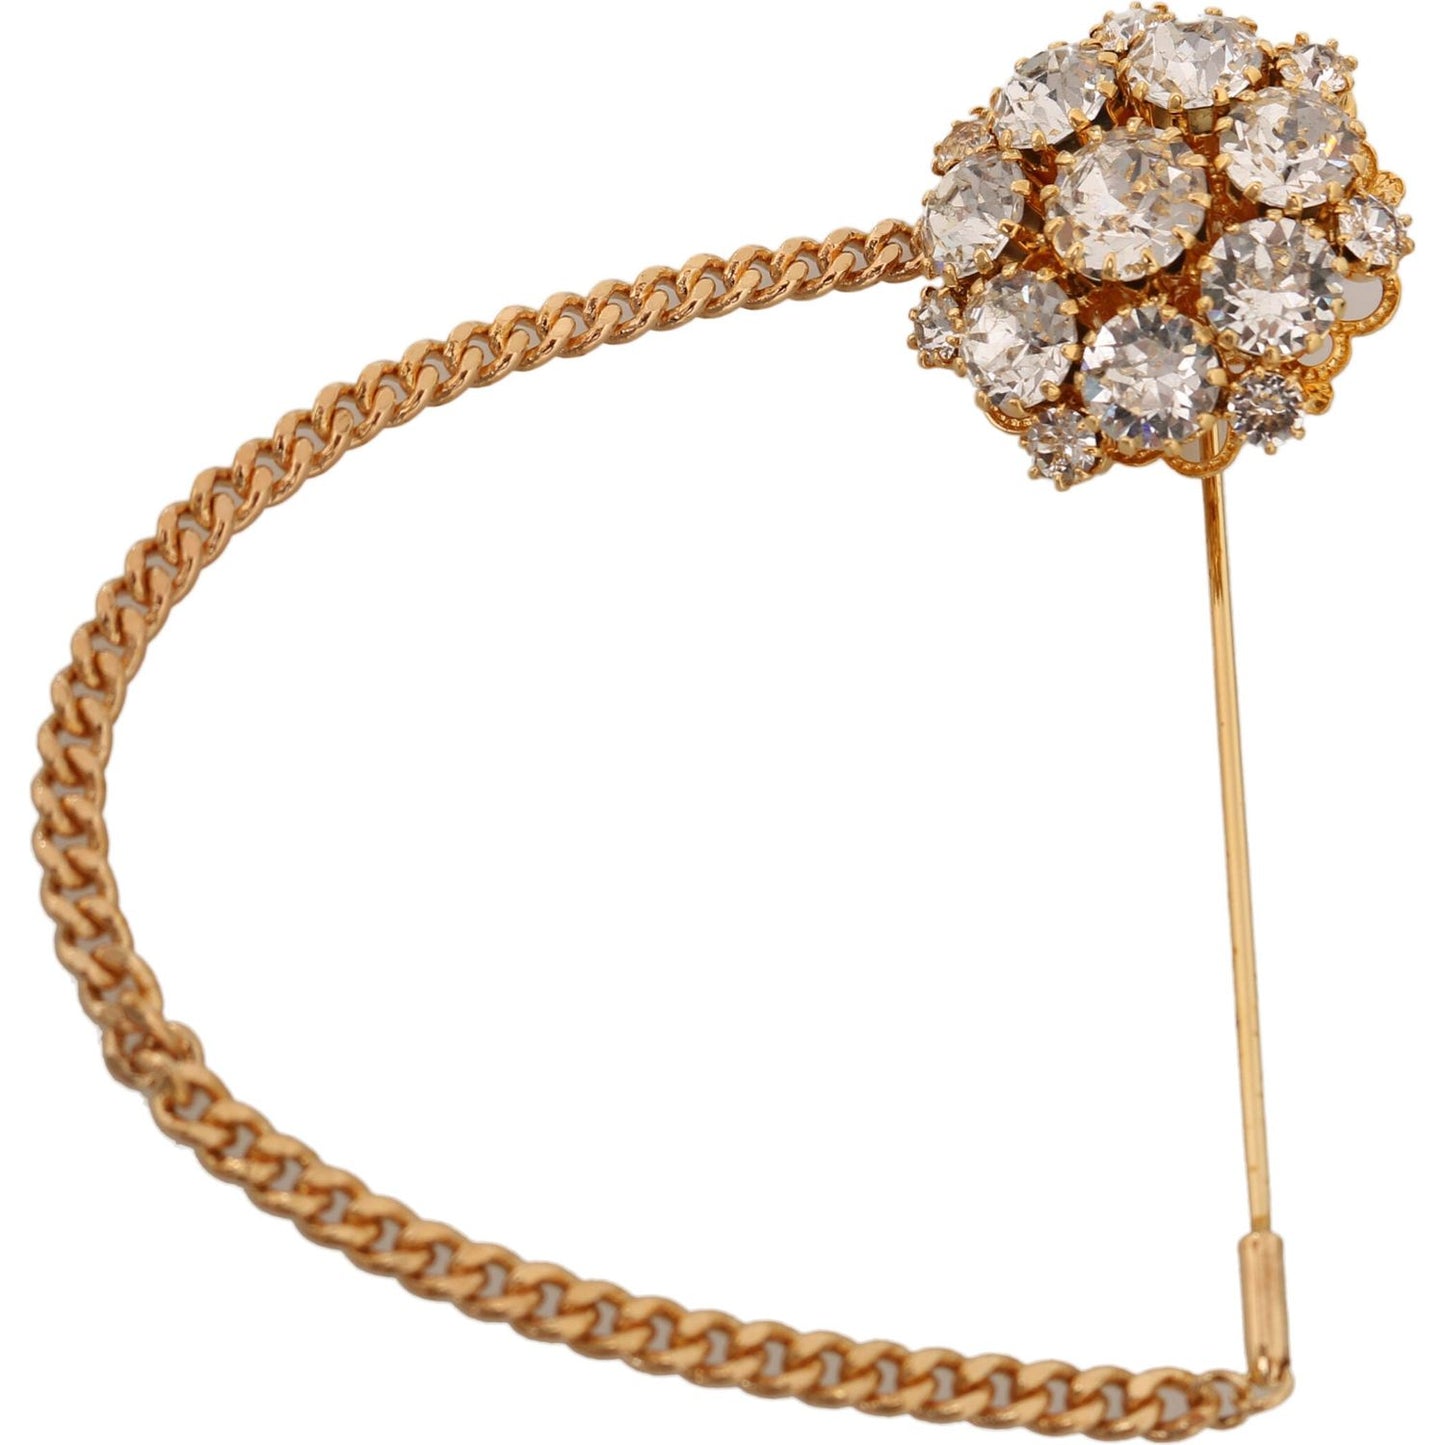 Exquisite Crystal-Embellished Gold Brooch